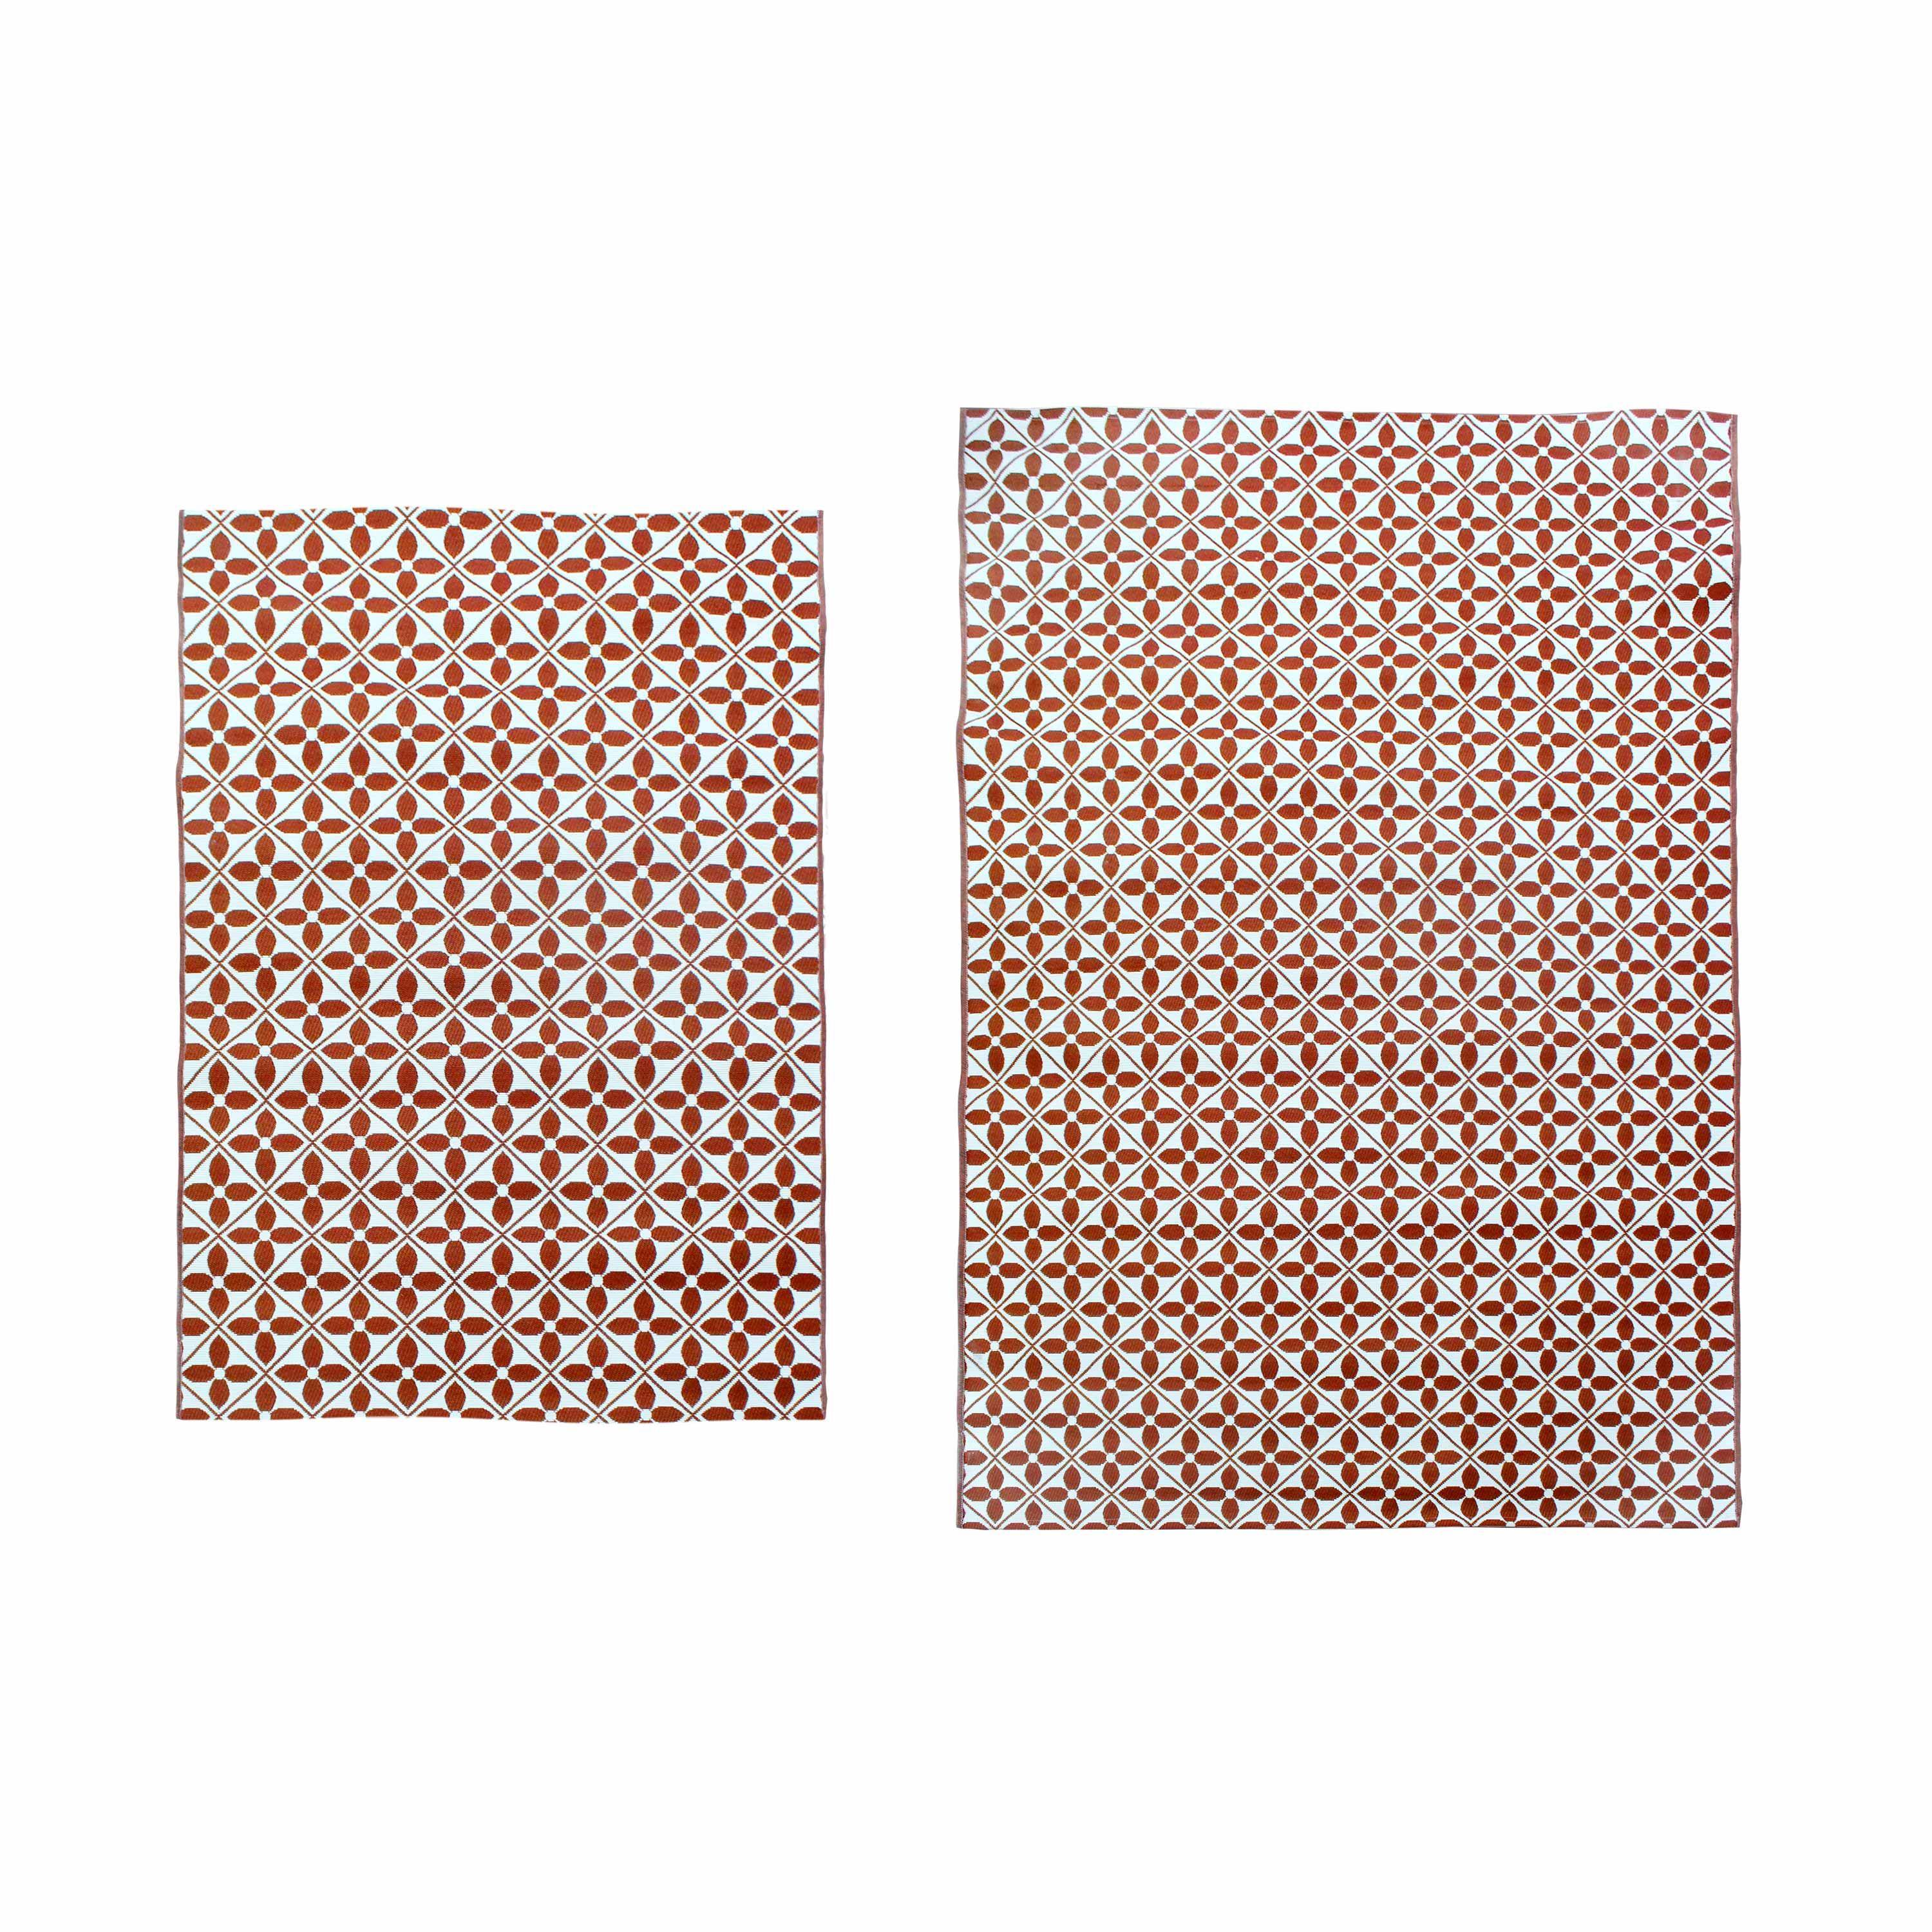 Outdoor rug - 160x230cm - tile print, rectangular, indoor/outdoor use - Terracotta,sweeek,Photo5